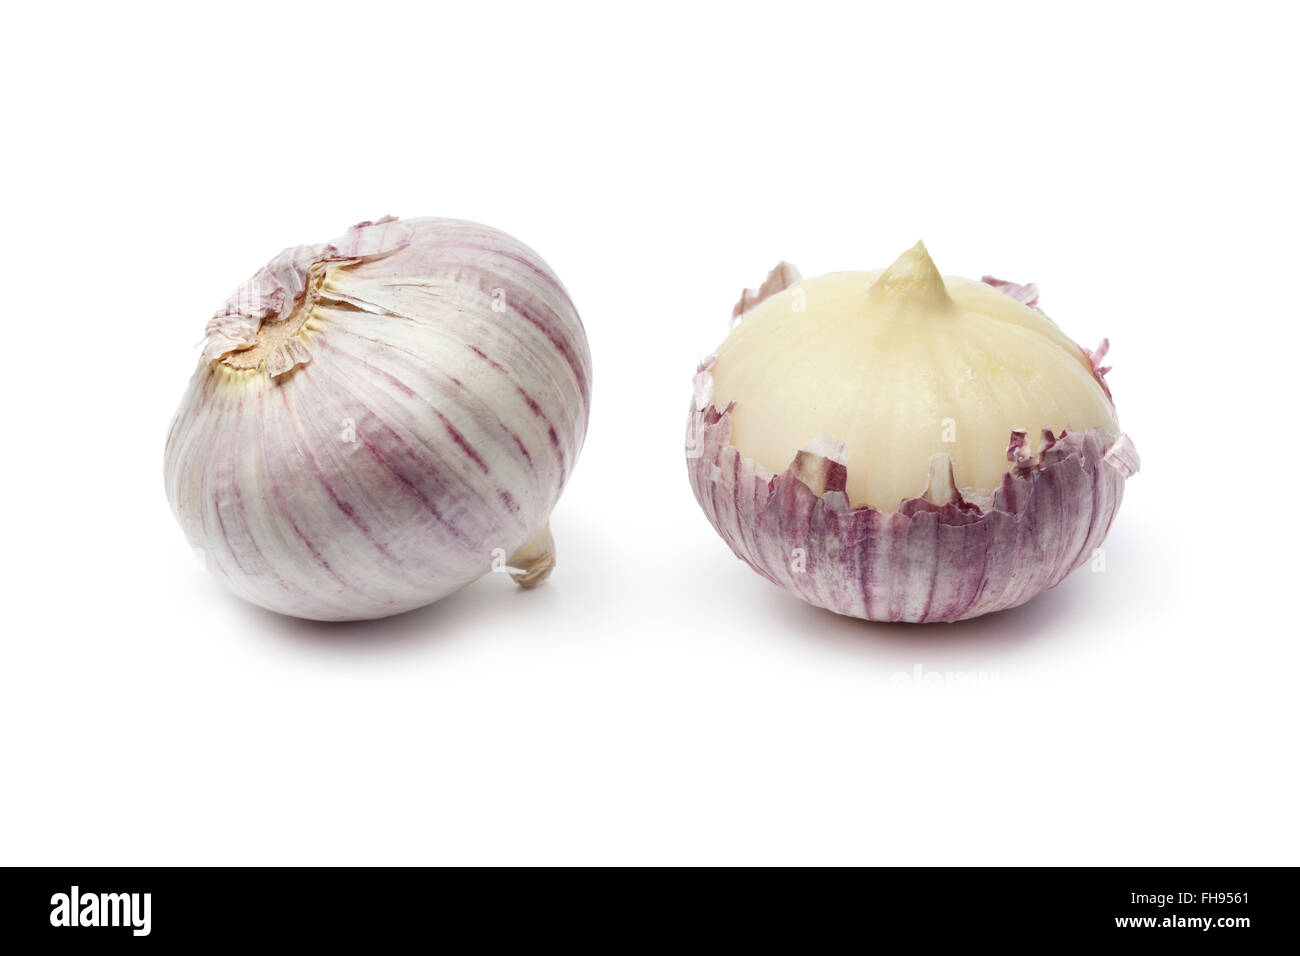 Whole fresh single clove garlic on white background Stock Photo